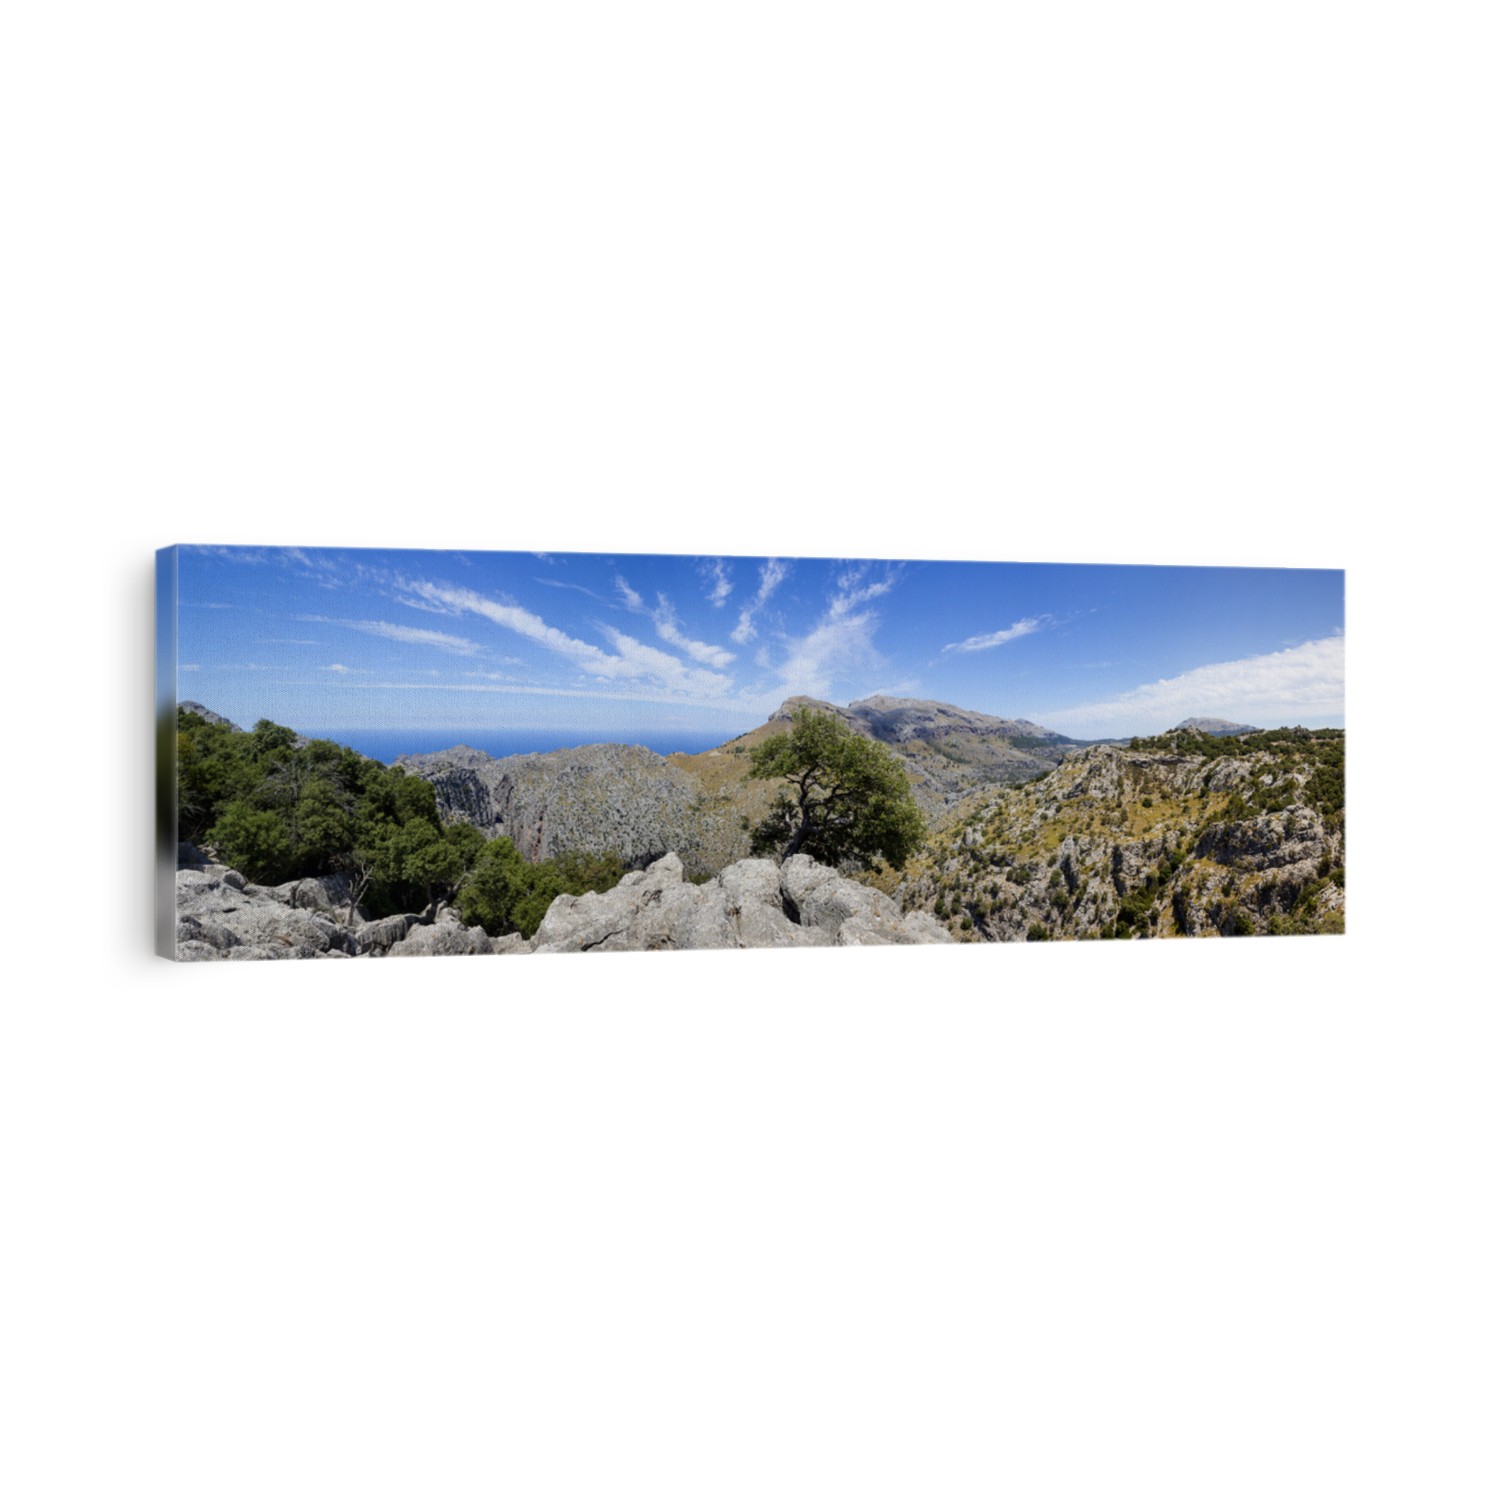 Panoramic image of Sa Calobra coast, Mallorca island, Spain